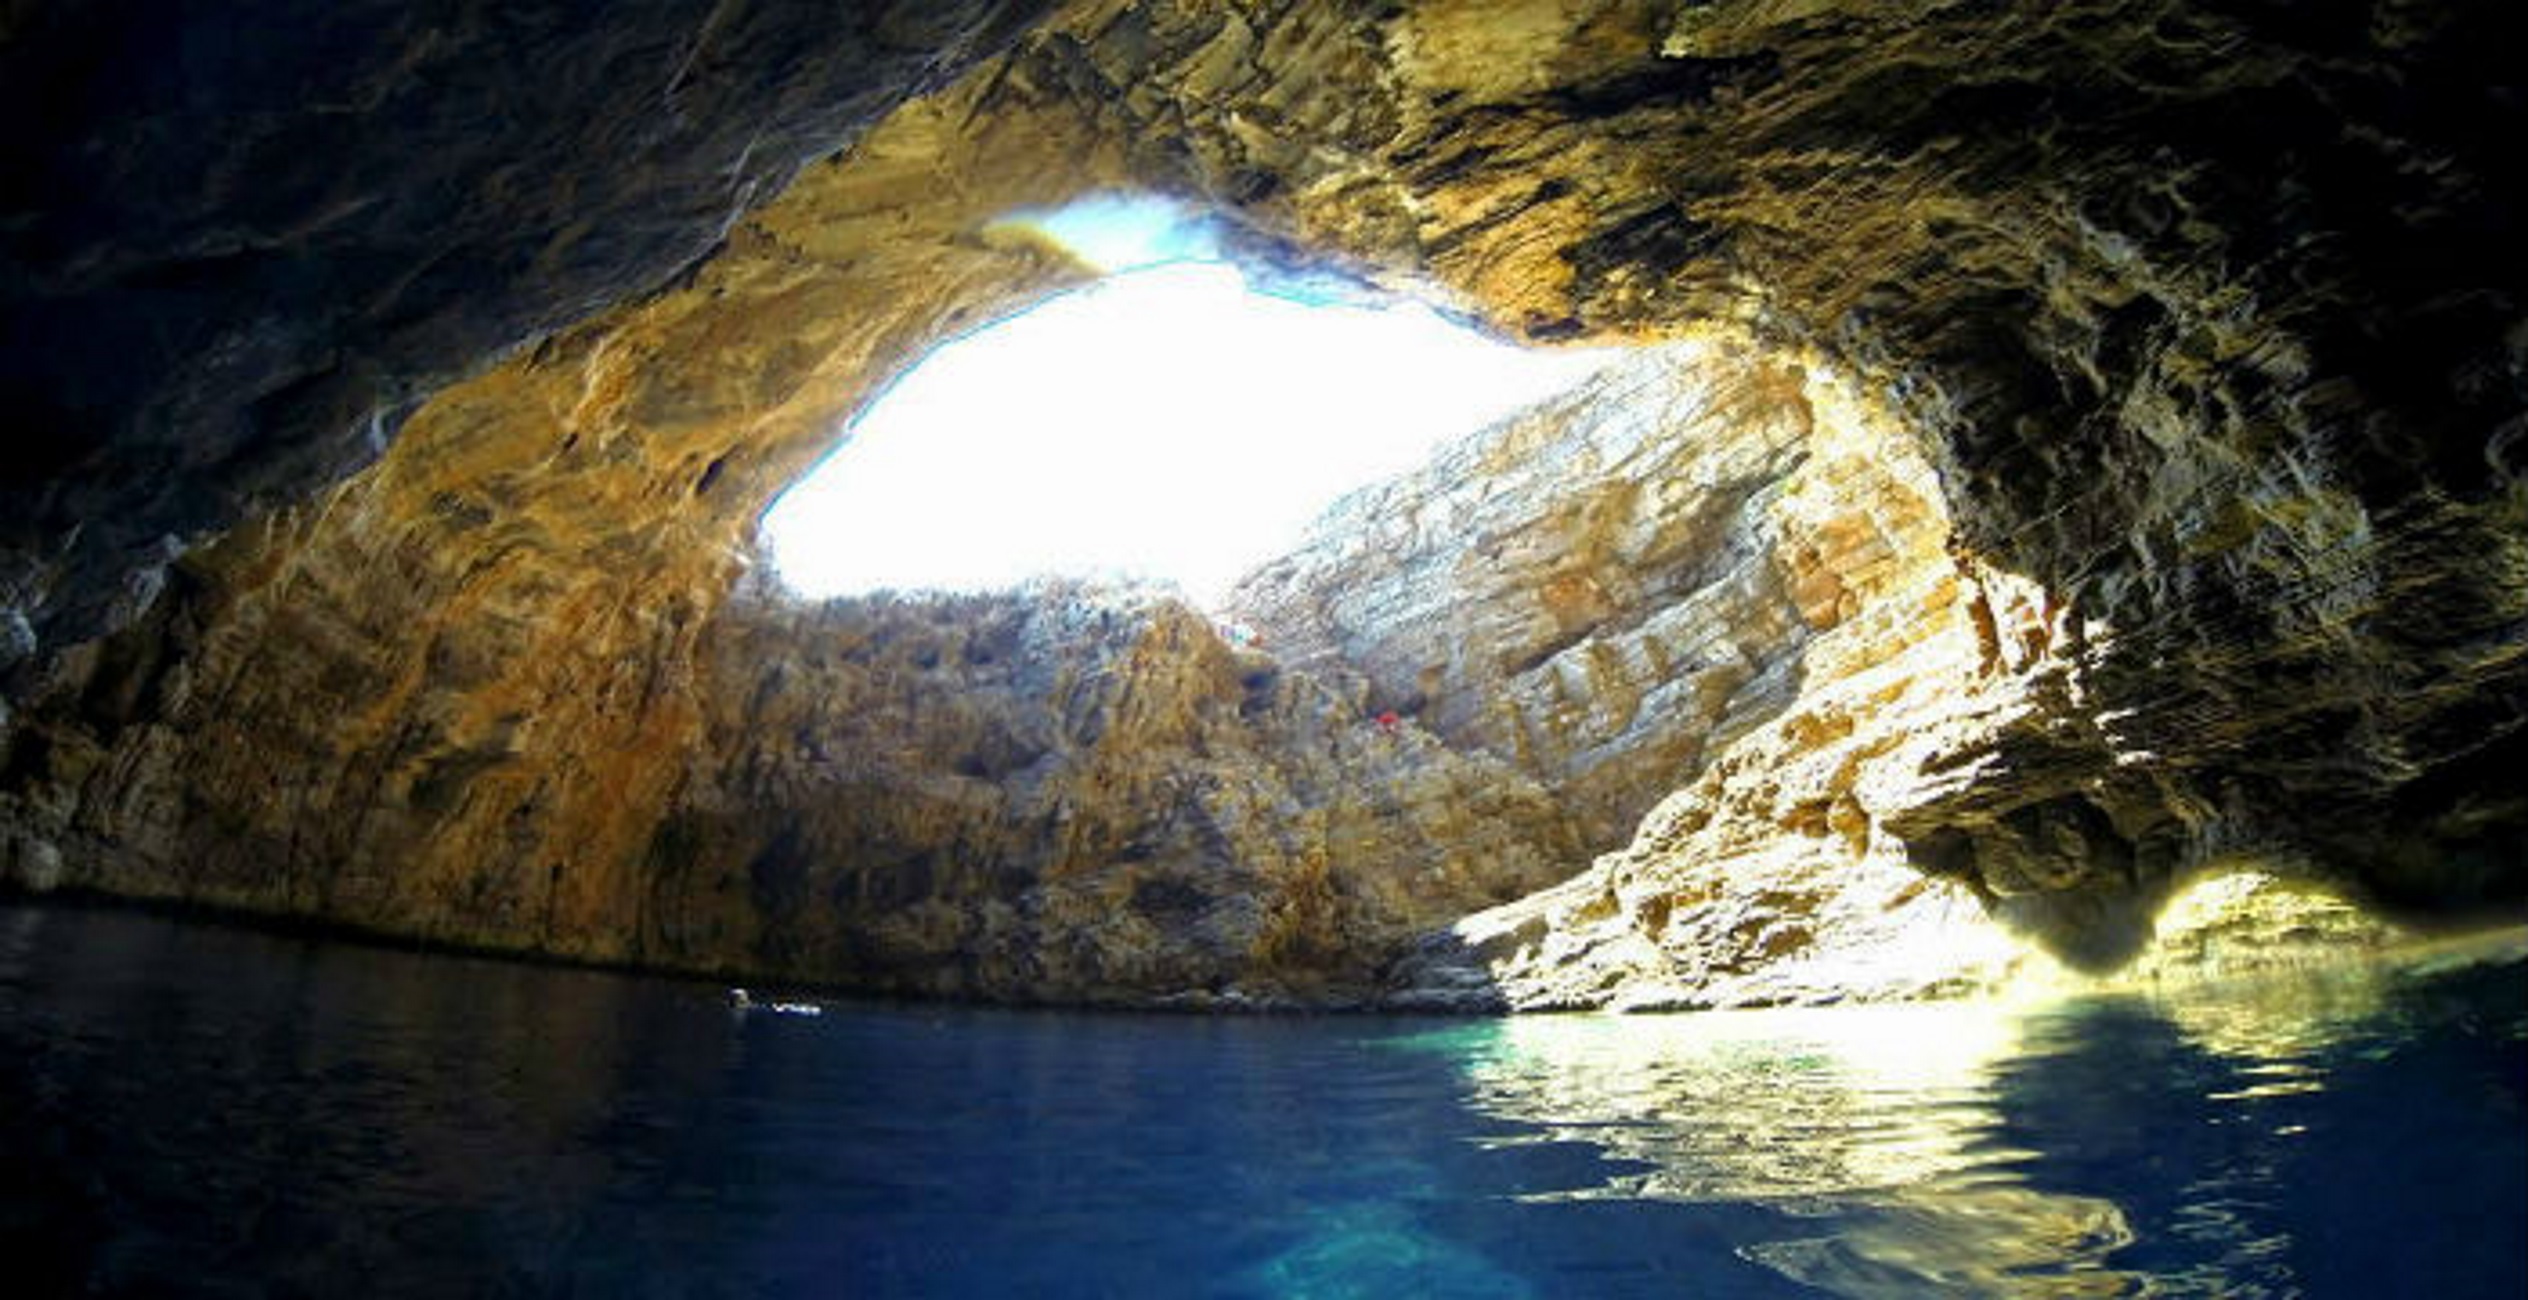 Εύβοια: Το εκπληκτικό σπήλαιο σε ένα «κρυμμένο διαμάντι» που κόβει την ανάσα με την ομορφιά του